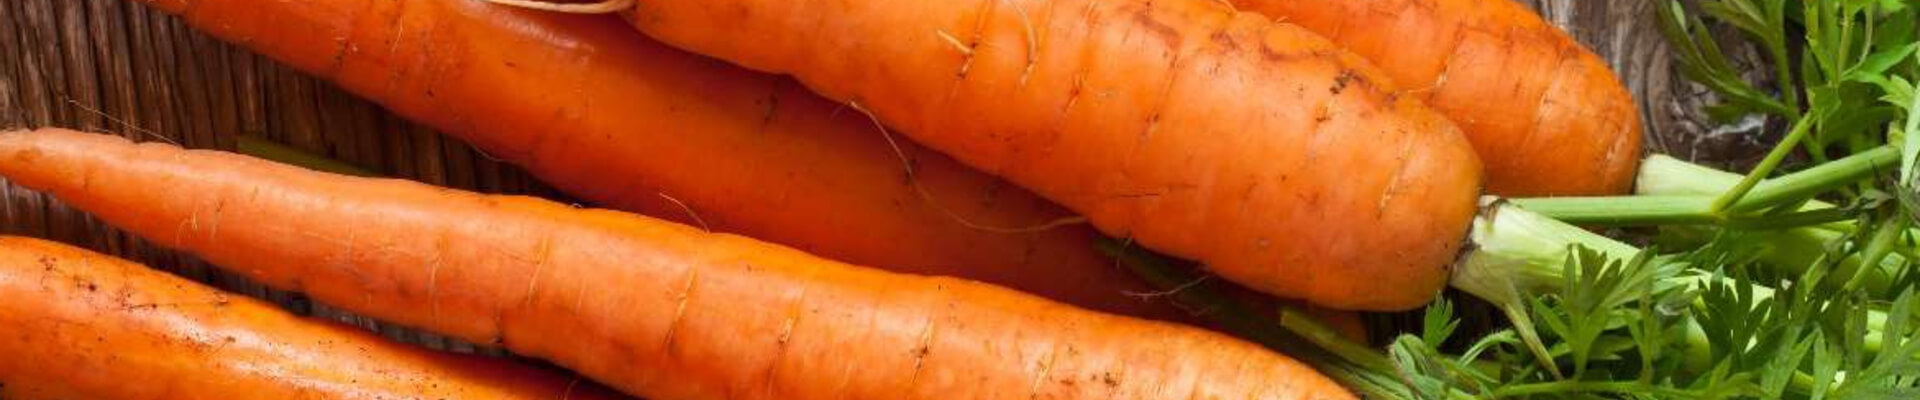 carottes-magasin-le-carre-bio-logique-janze